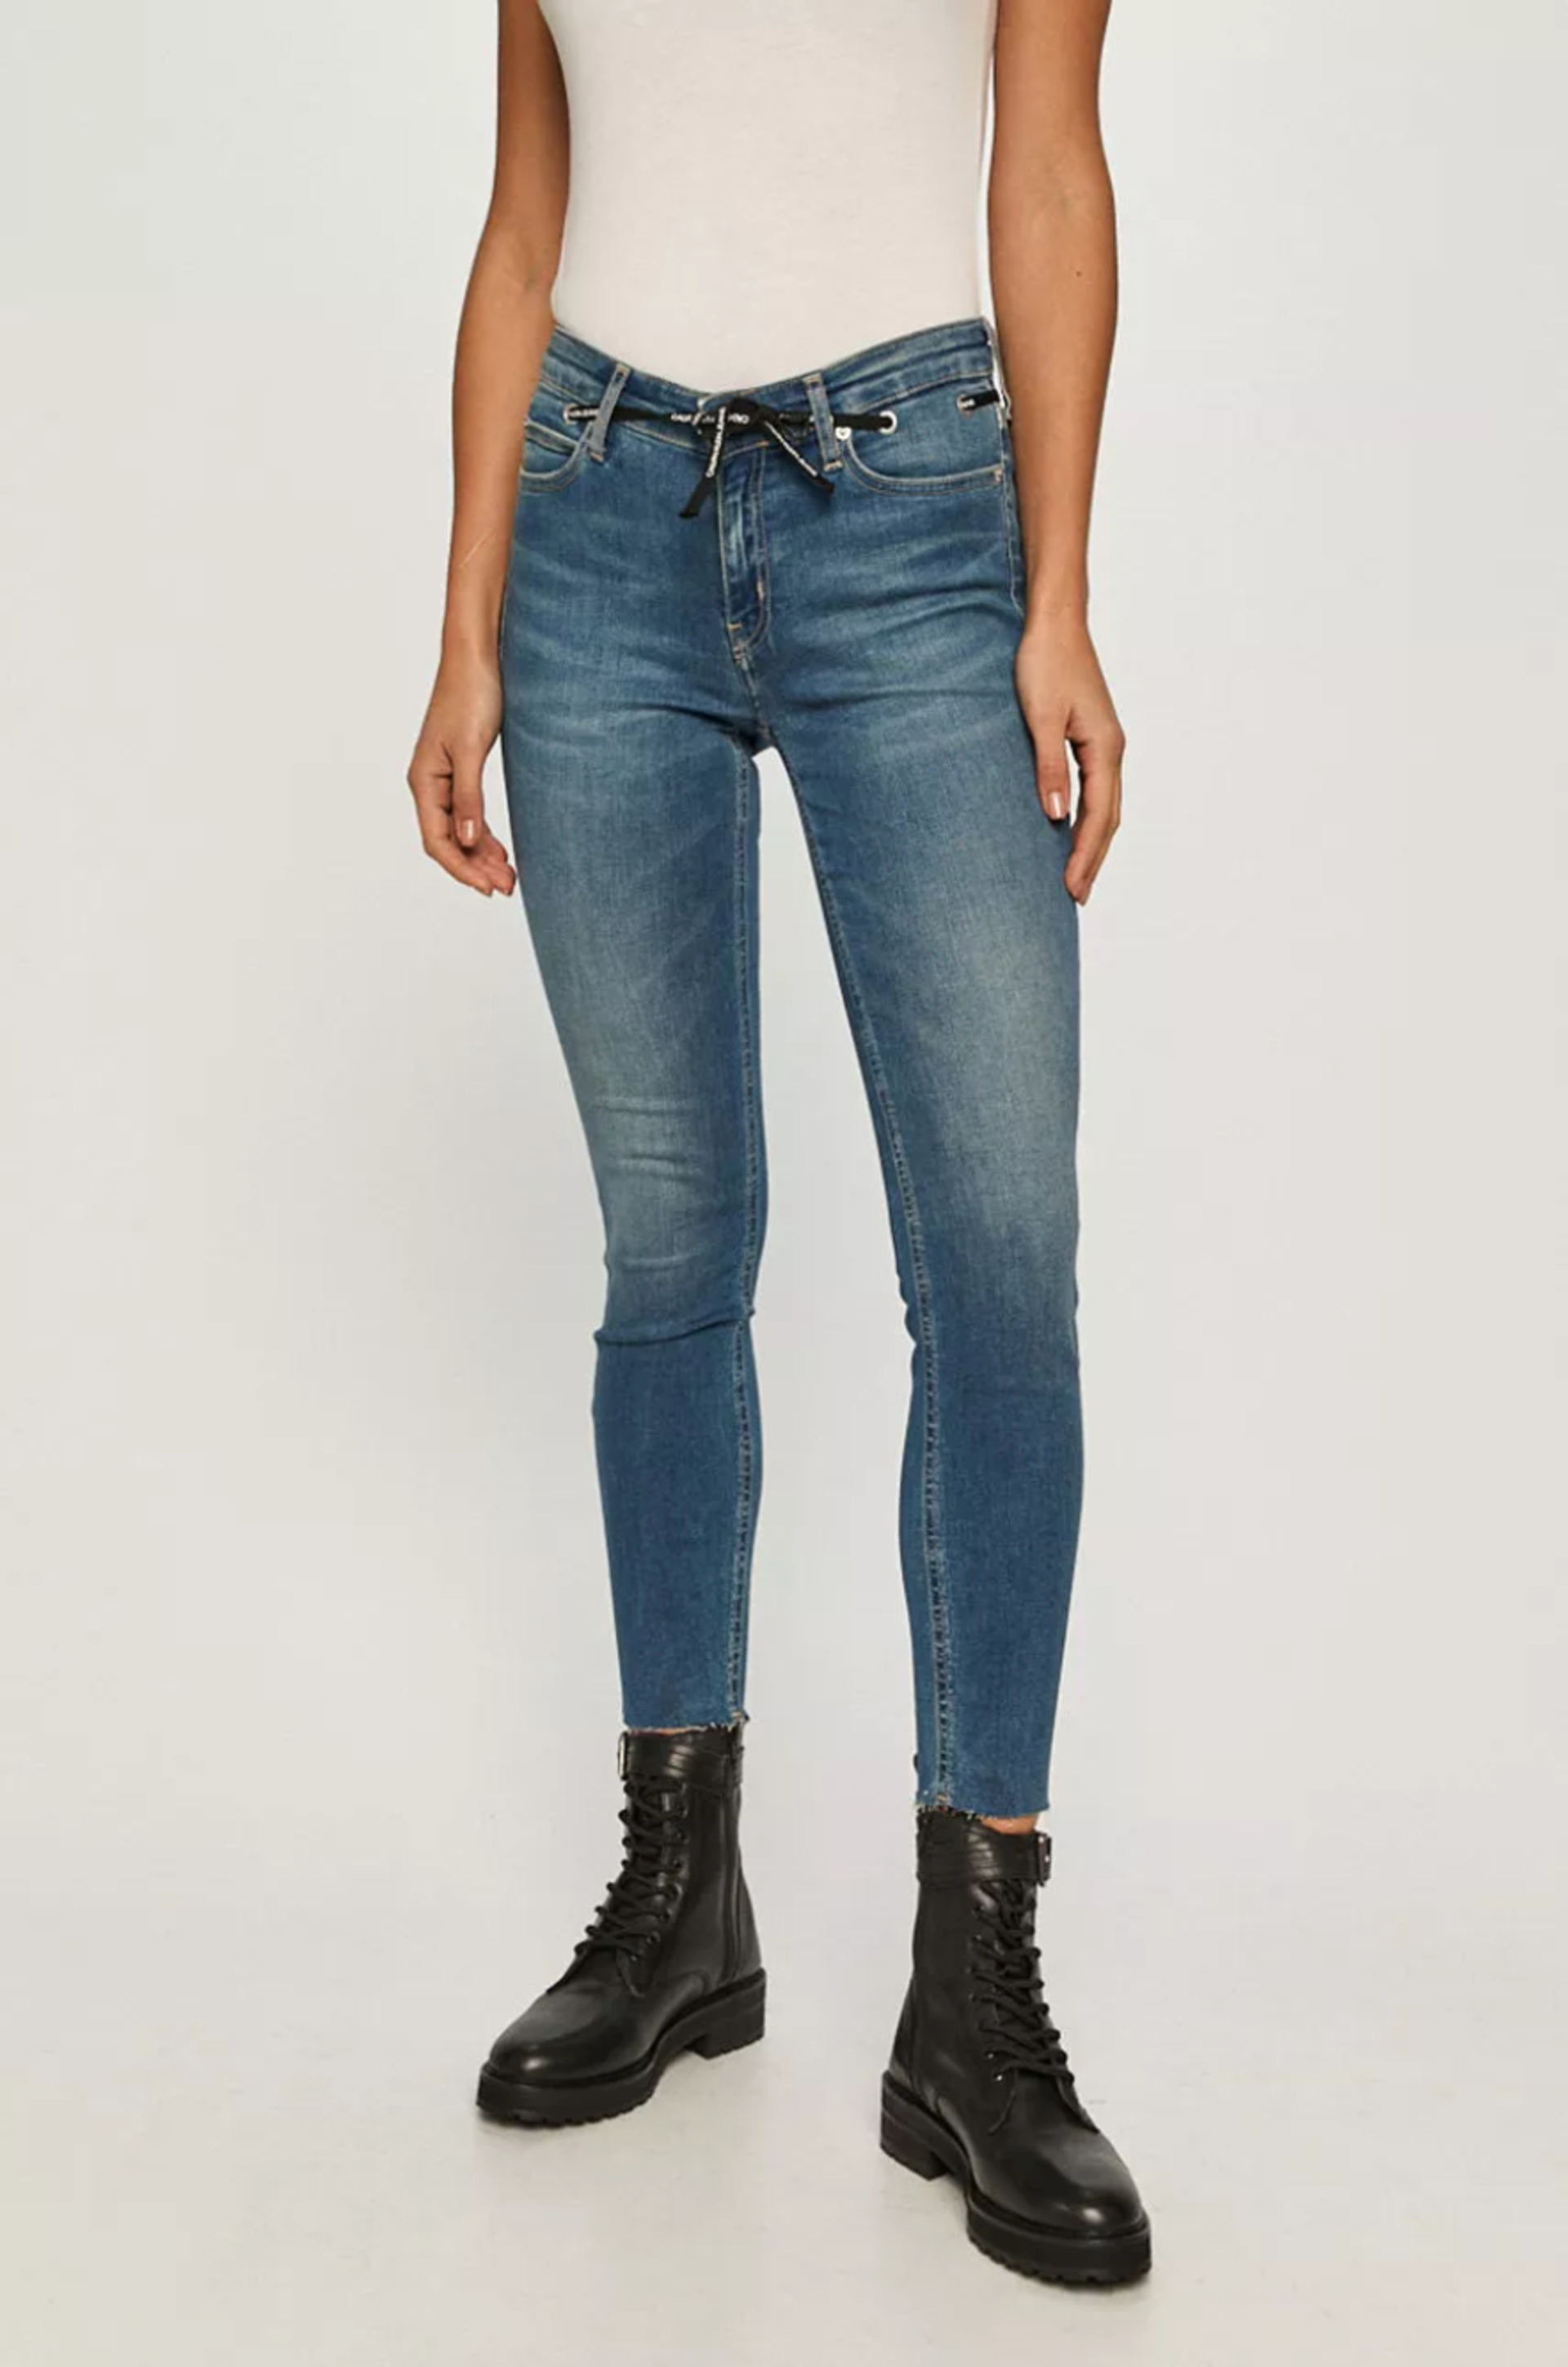 Calvin Klein dámské modré džíny - 31/NI (1A4)